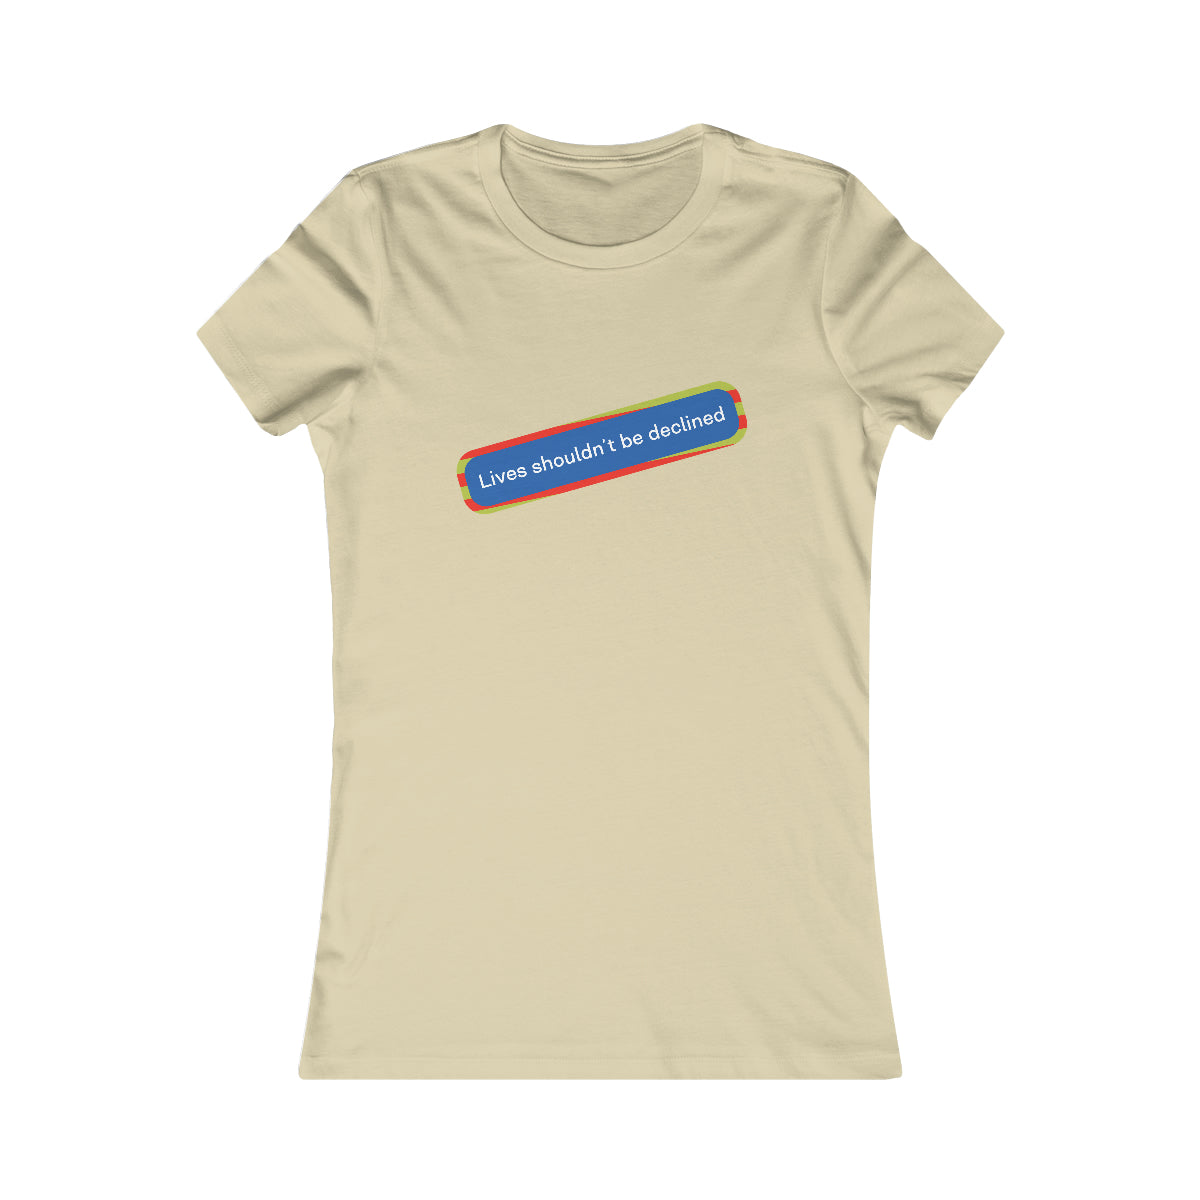 Leben sollten nicht abgelehnt werden – das Lieblings-T-Shirt für Frauen